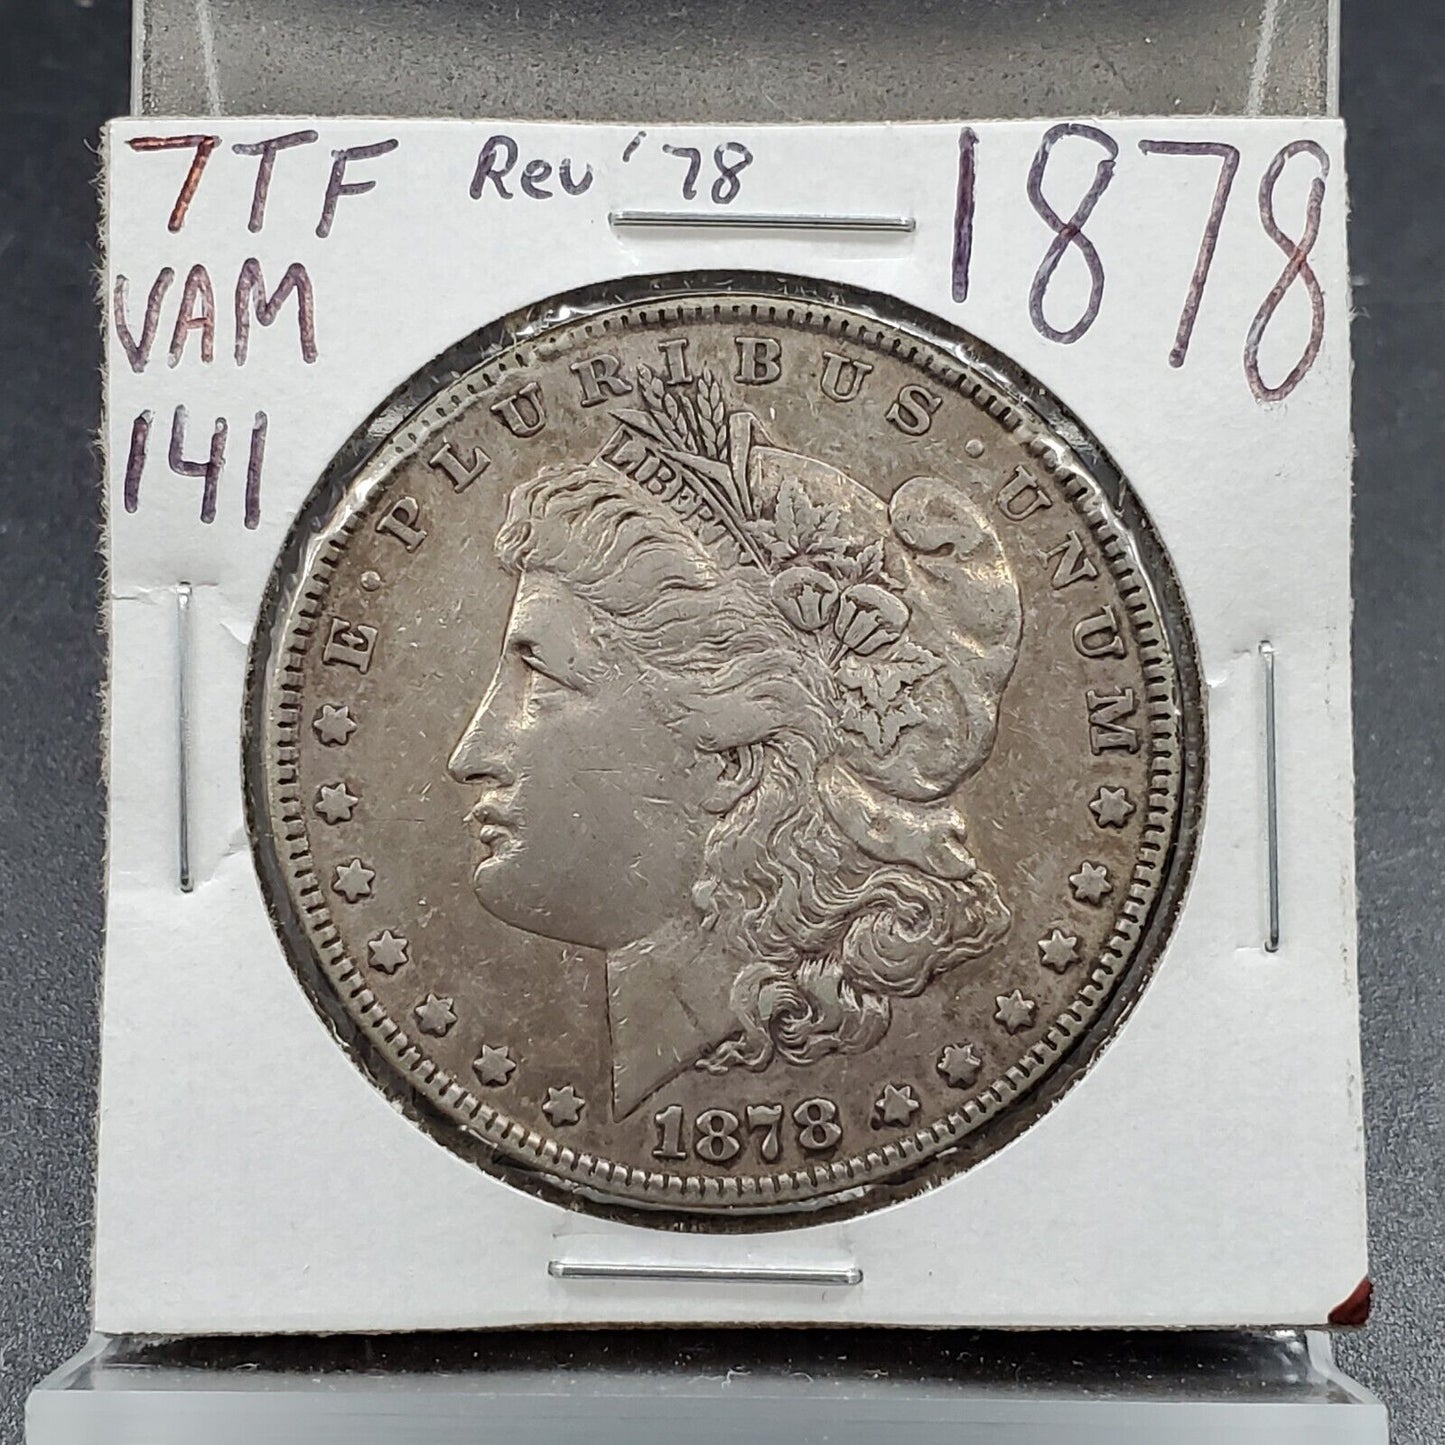 1878 P 7TF REV 78 Morgan Silver Eagle Dollar Coin VAM-141 Choice EF XF Extra Fin